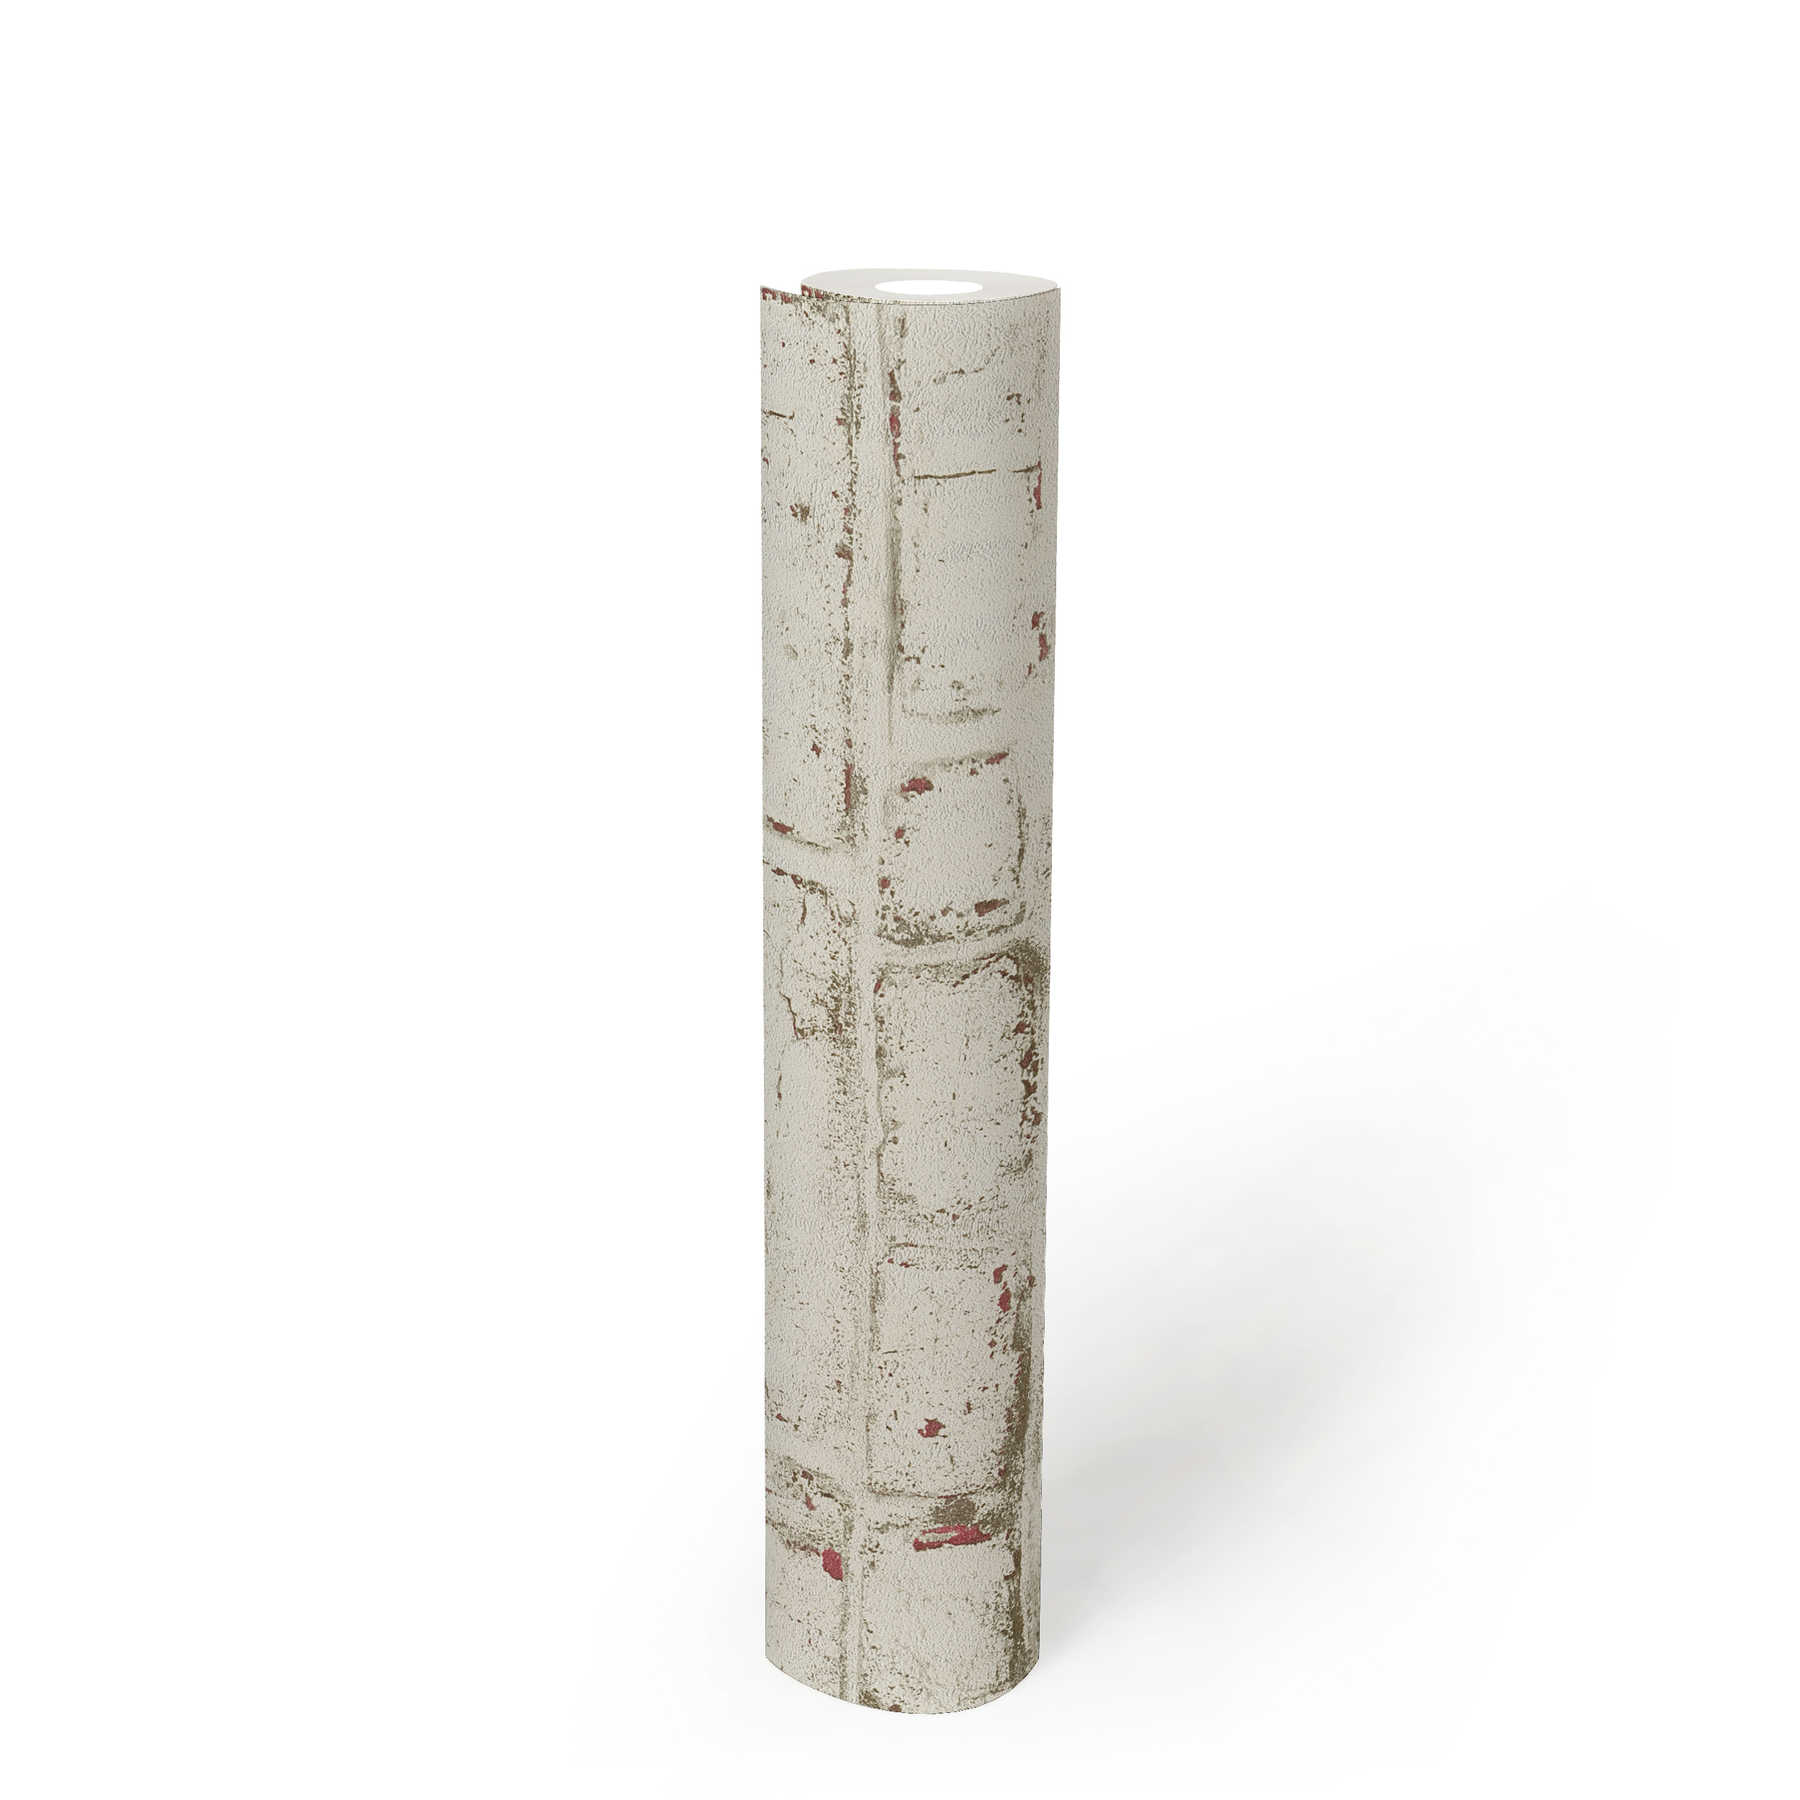             Papier peint aspect pierre avec brique blanche vintage - blanc, rouge, beige
        